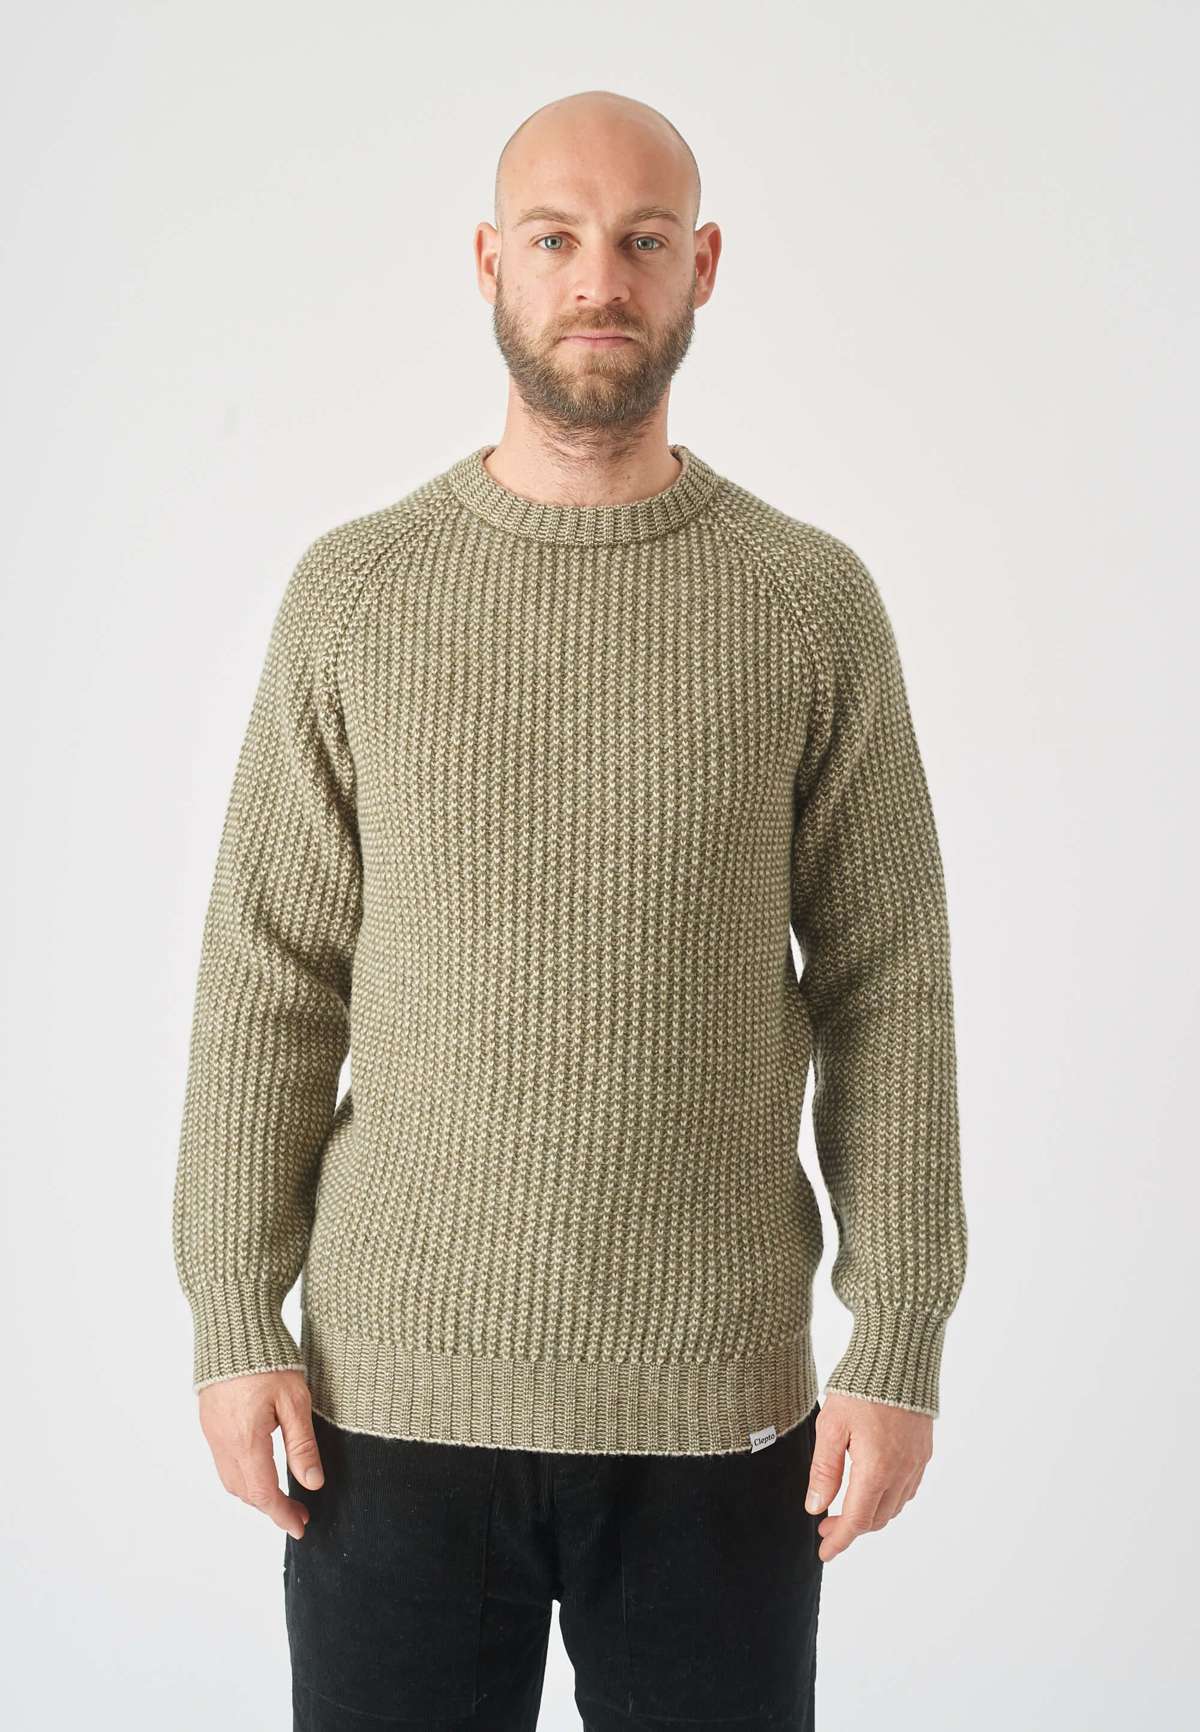 Вязаный свитер модного узора в рубчик.